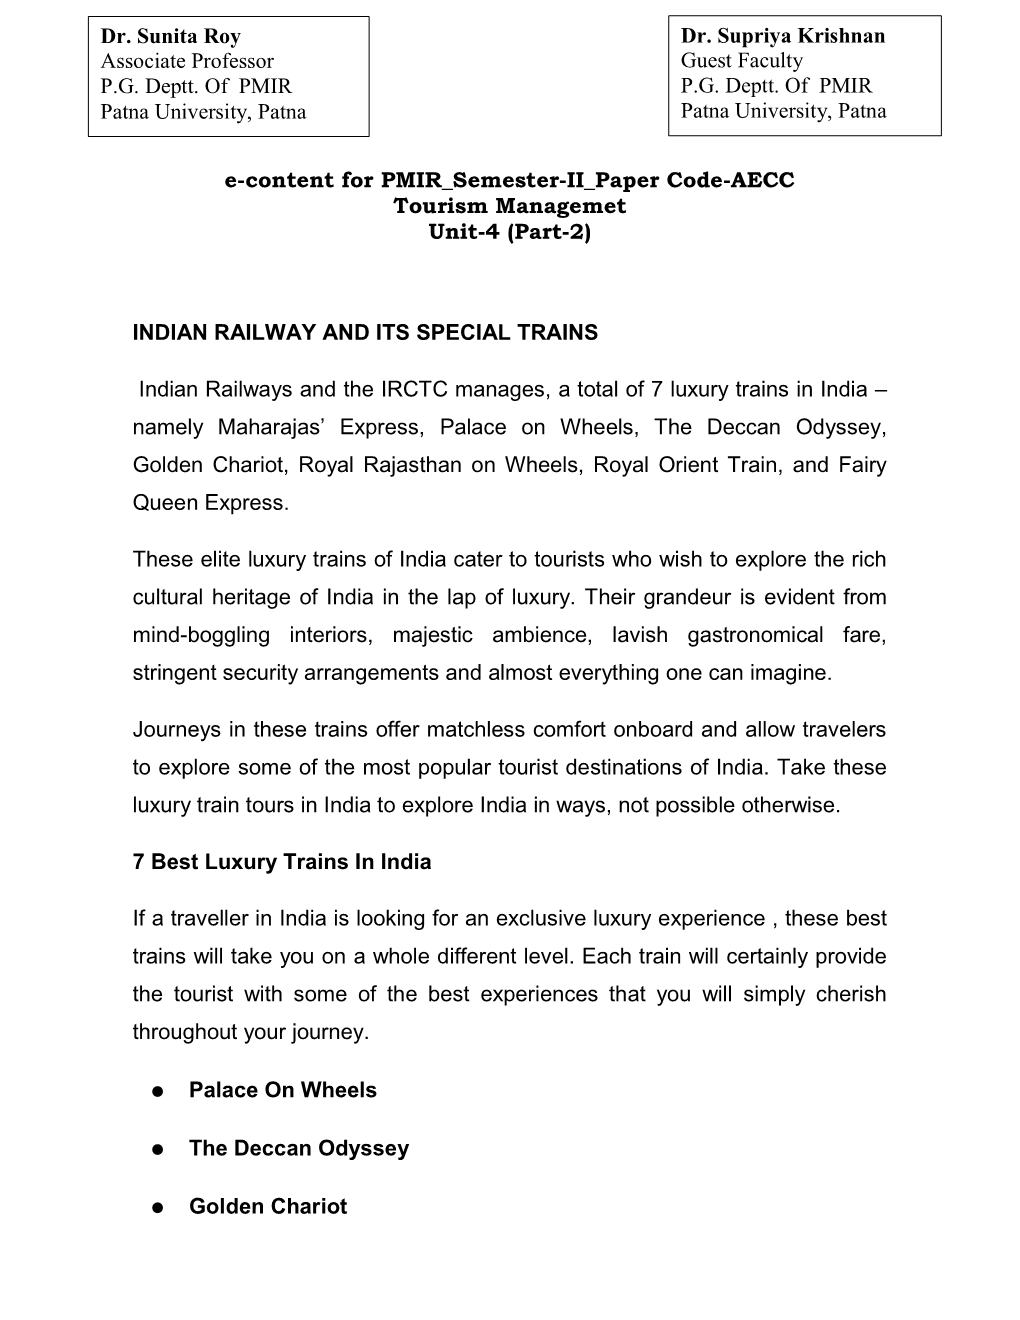 E-Content for PMIR Semester-II Paper Code-AECC Tourism Managemet Unit-4 (Part-2)